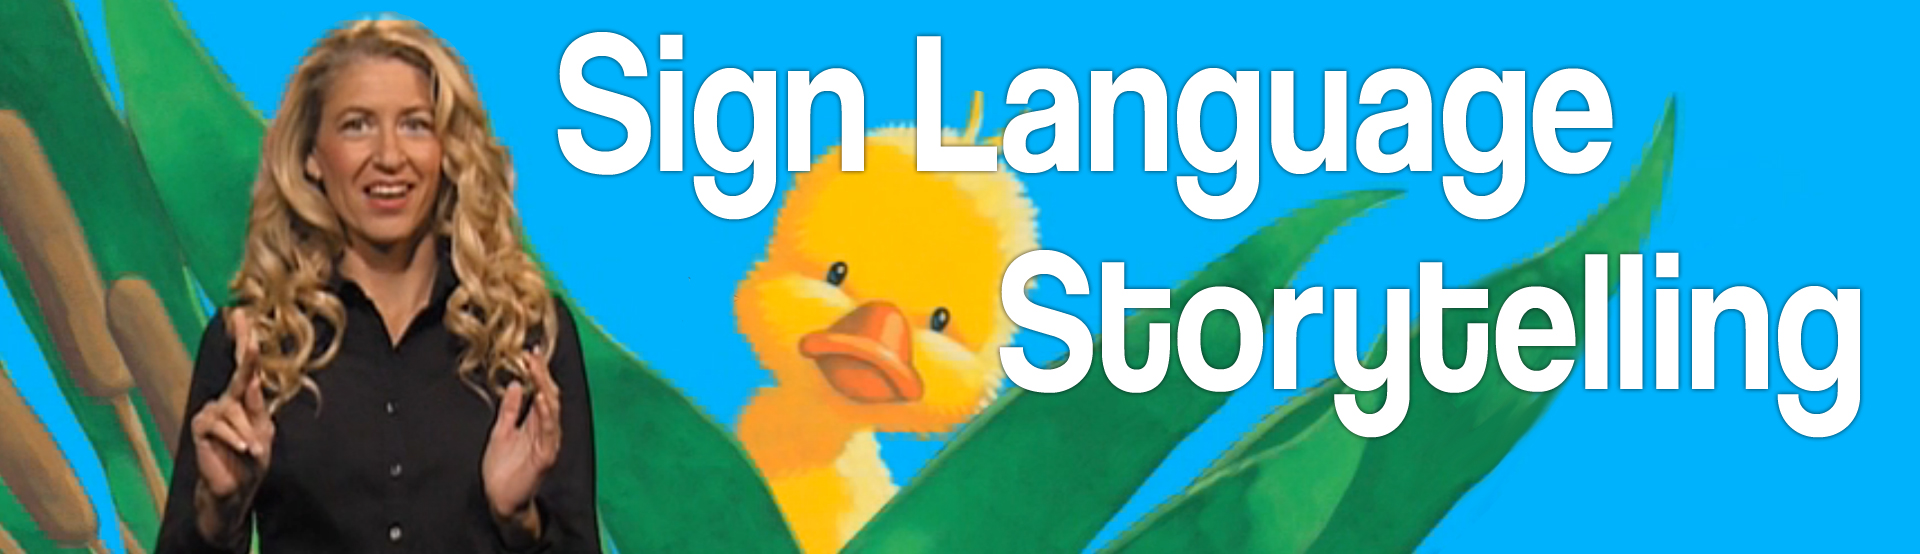 Sign Language Storytelling